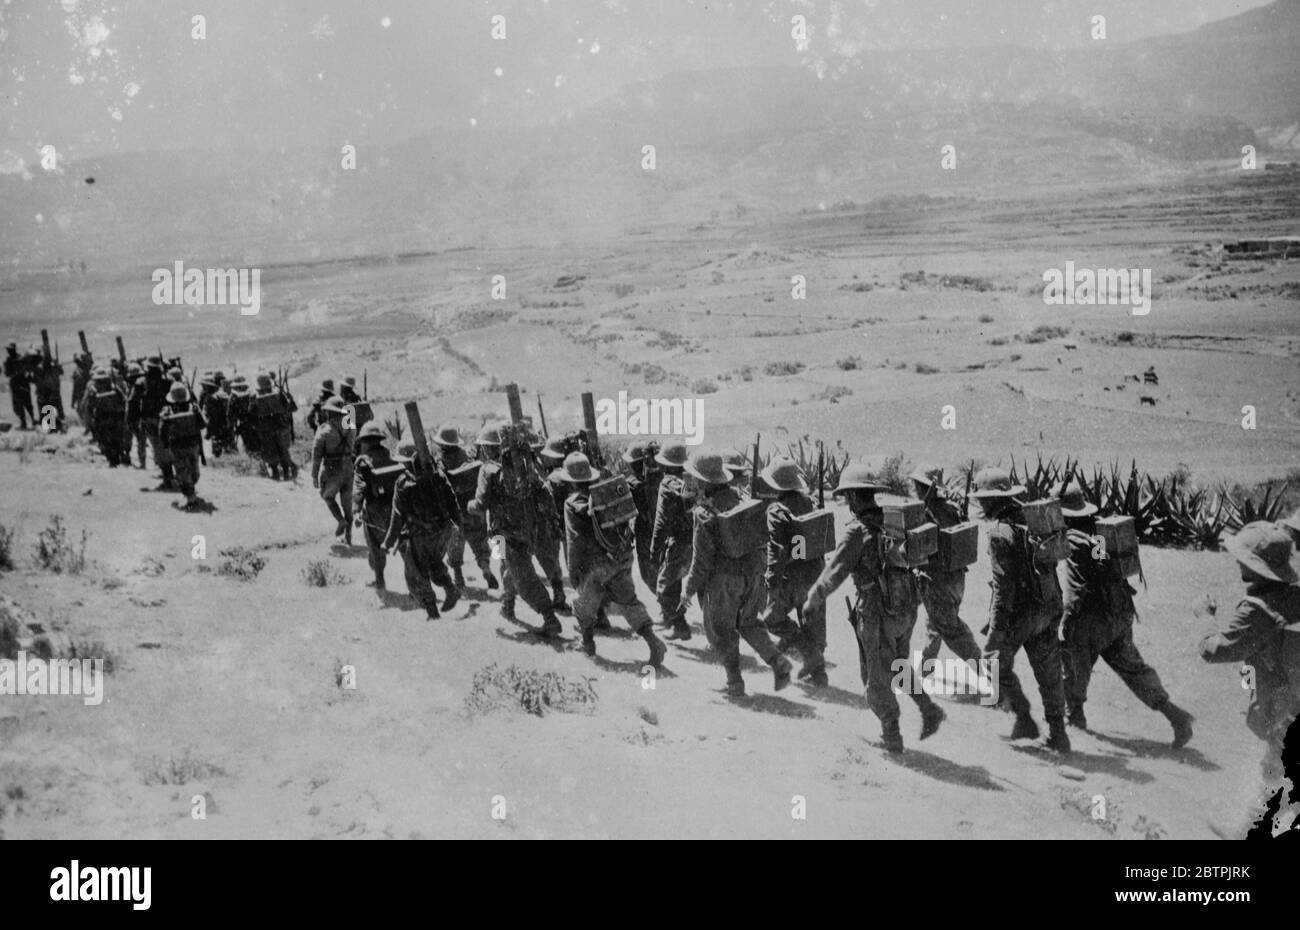 Truppen marschieren durch die Wüste . Eine Kolonne italienischer Truppen, die schwere Waffen und Ausrüstung auf dem Rücken tragen, die während des Vormarschs im Adigrat-Sektor durch die Wüste marschieren. 26. Oktober 1935 Stockfoto